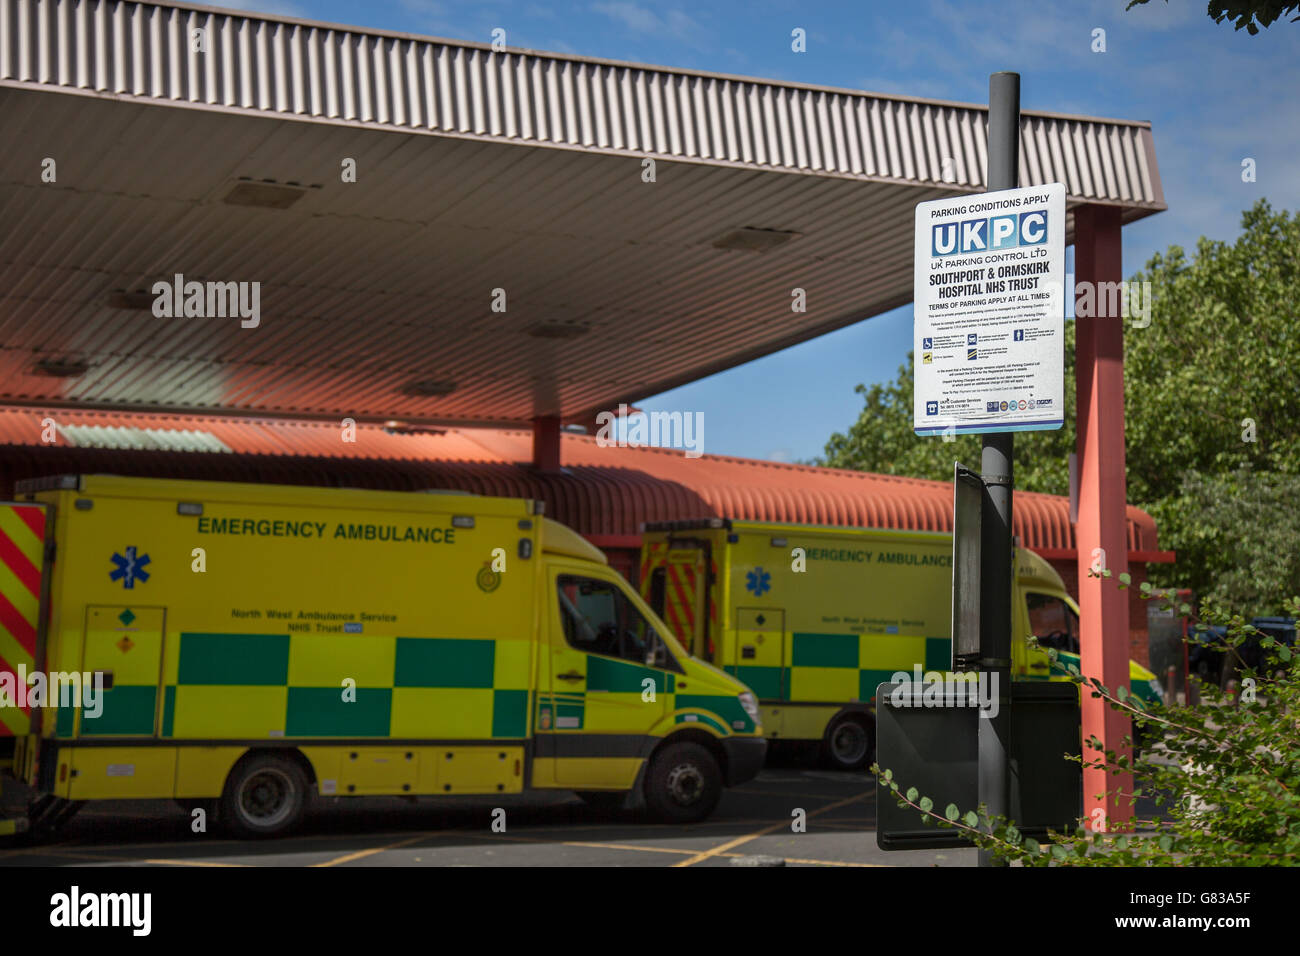 NHS Trust Southport et hôpital Formby, de l'information et de panneaux pour les frais de stationnement de l'hôpital, au Royaume-Uni. Banque D'Images